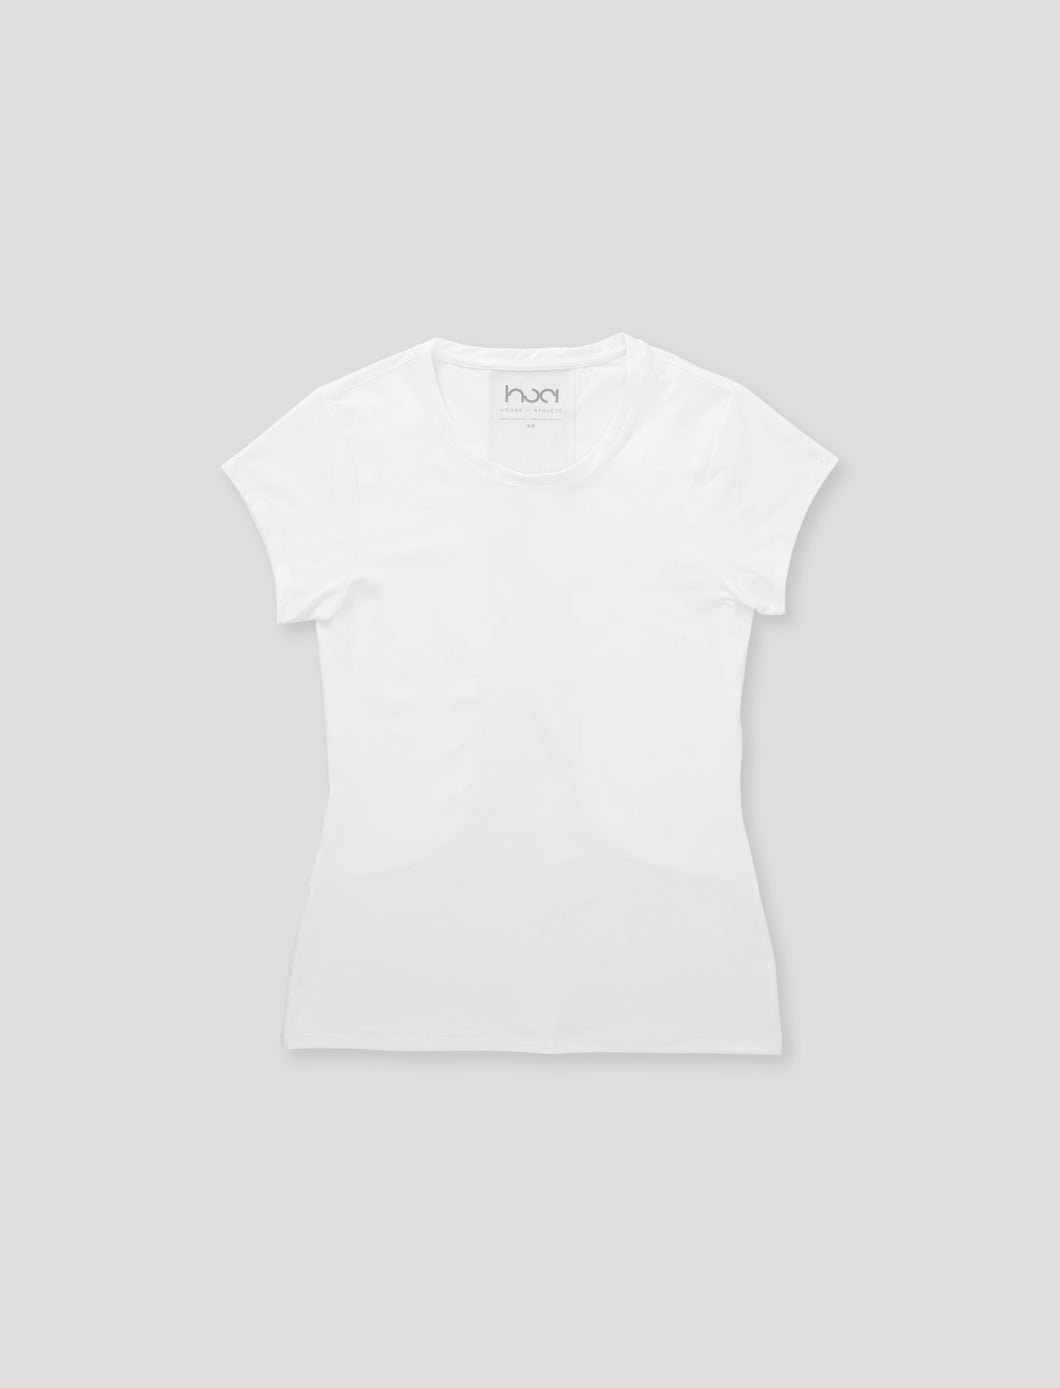 Women's Basic HOA Performance Short Sleeve Top White